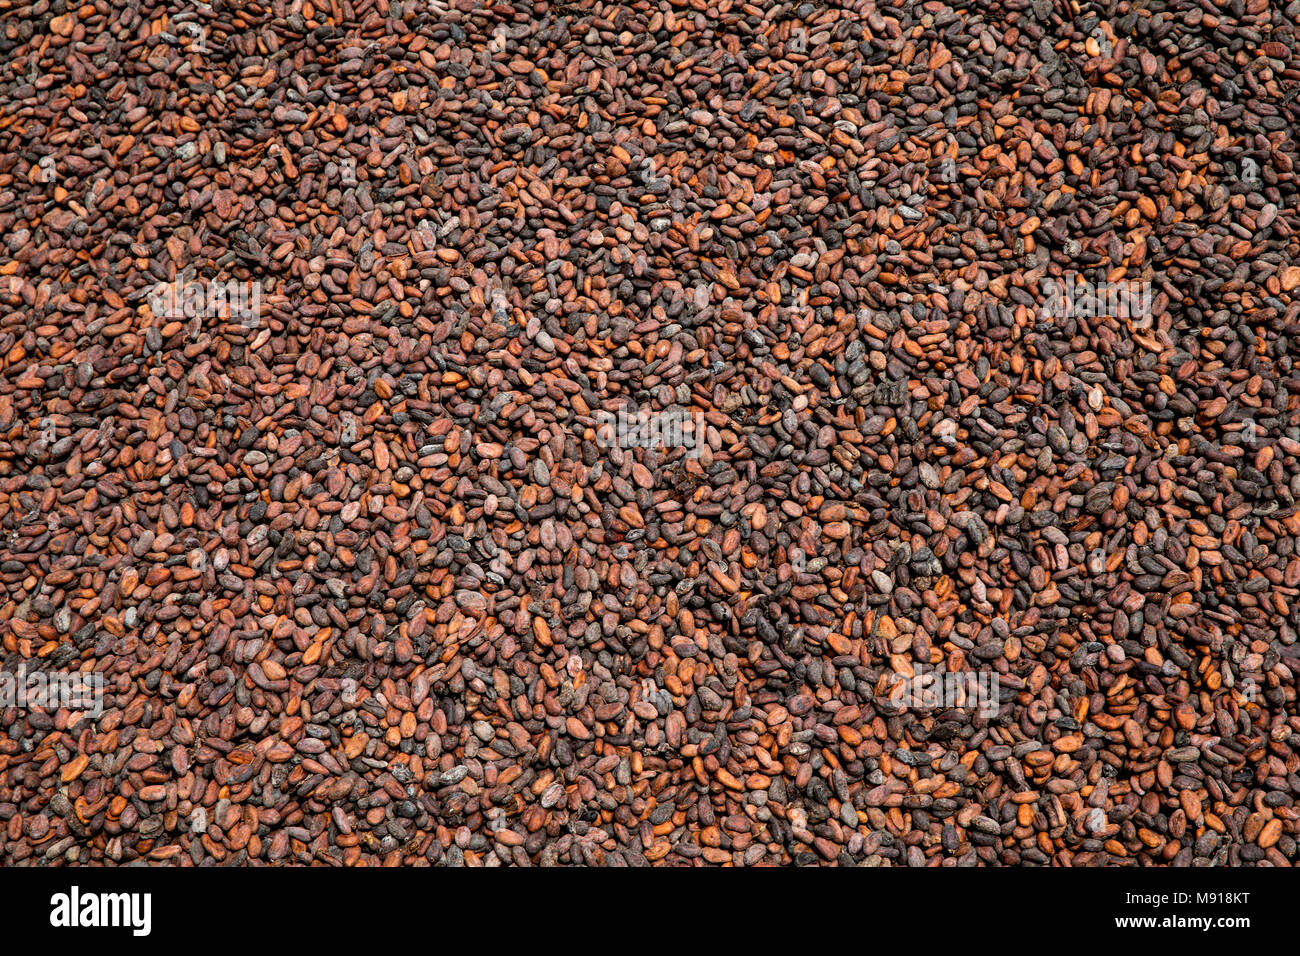 Ivory Coast. Cocoa drying. Stock Photo